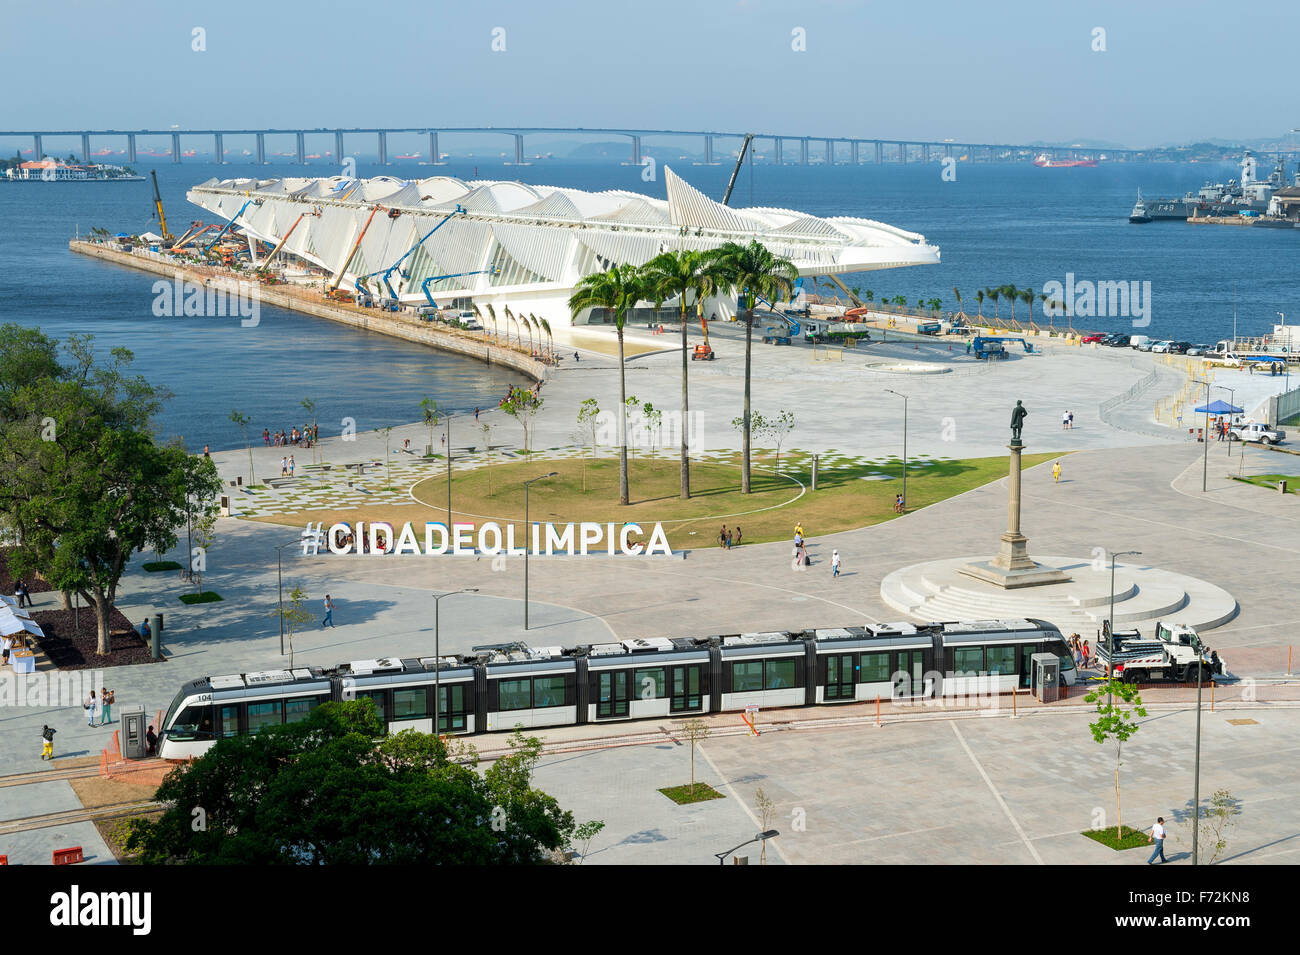 RIO DE JANEIRO, Brésil - 16 octobre 2015 : grand panneau n° CIDADEOLIMPICA (ville olympique) se tient à Maua Plaza au Porto Maravilha Banque D'Images